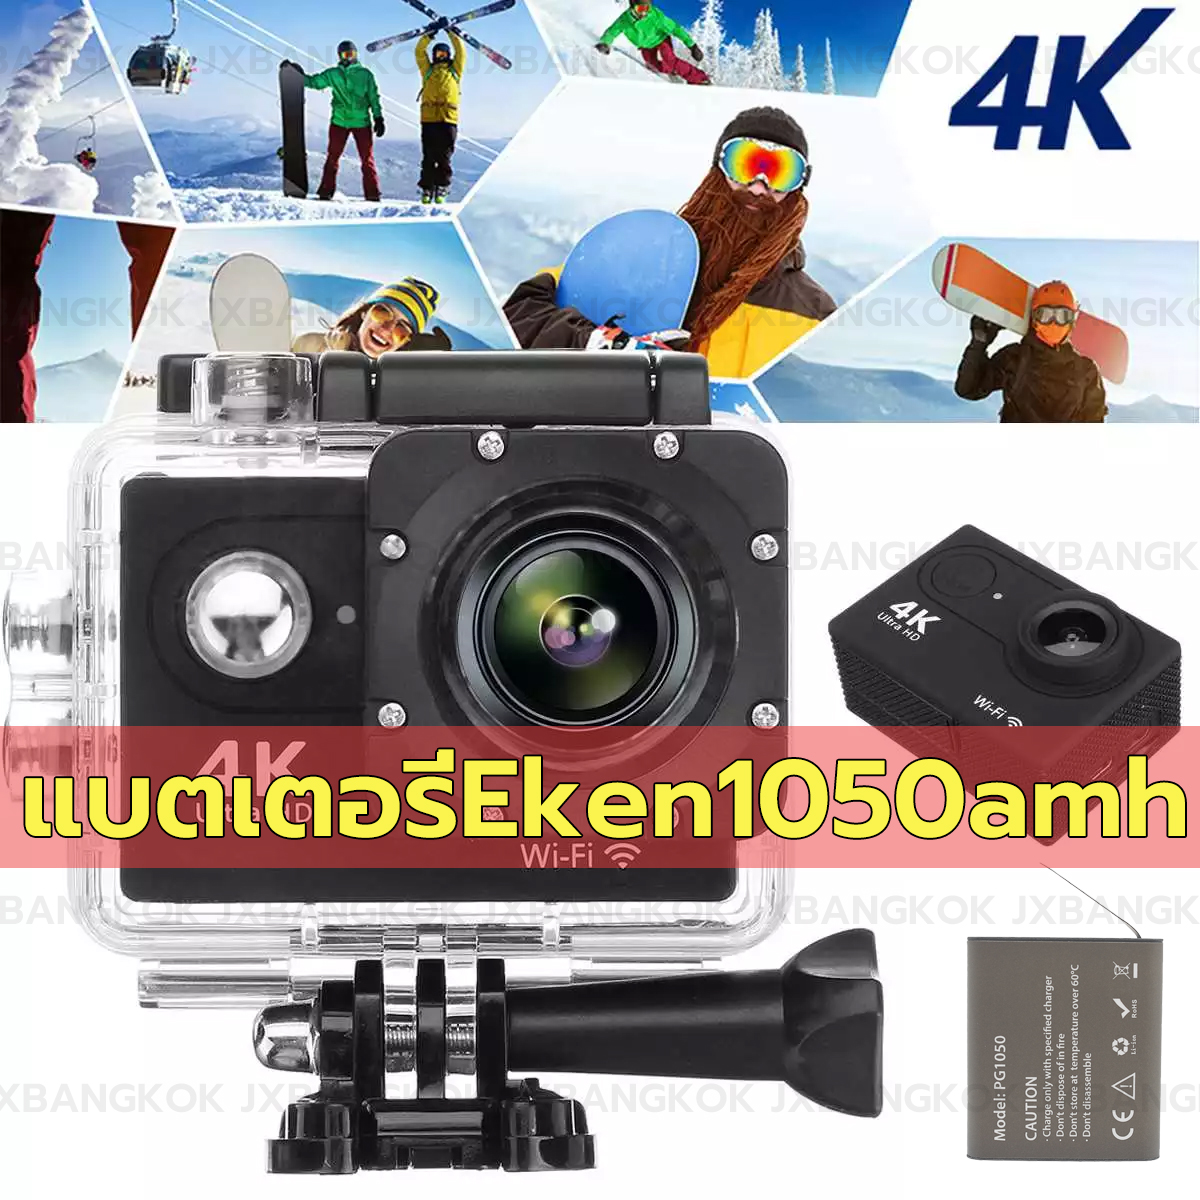 FN กล้องกล้องกันน้ำกล้อง GoPro กล้องกลางแจ้งกล้องหน้า HD กล้องดิจิตอลขนาดเล็กกันน้ำความลึกสูงสุด 30 เมตร 4k wifi 2.0 นิ้วกล้อง DV กันน้ำกีฬากันน้ำ Sport camera Action camera HD